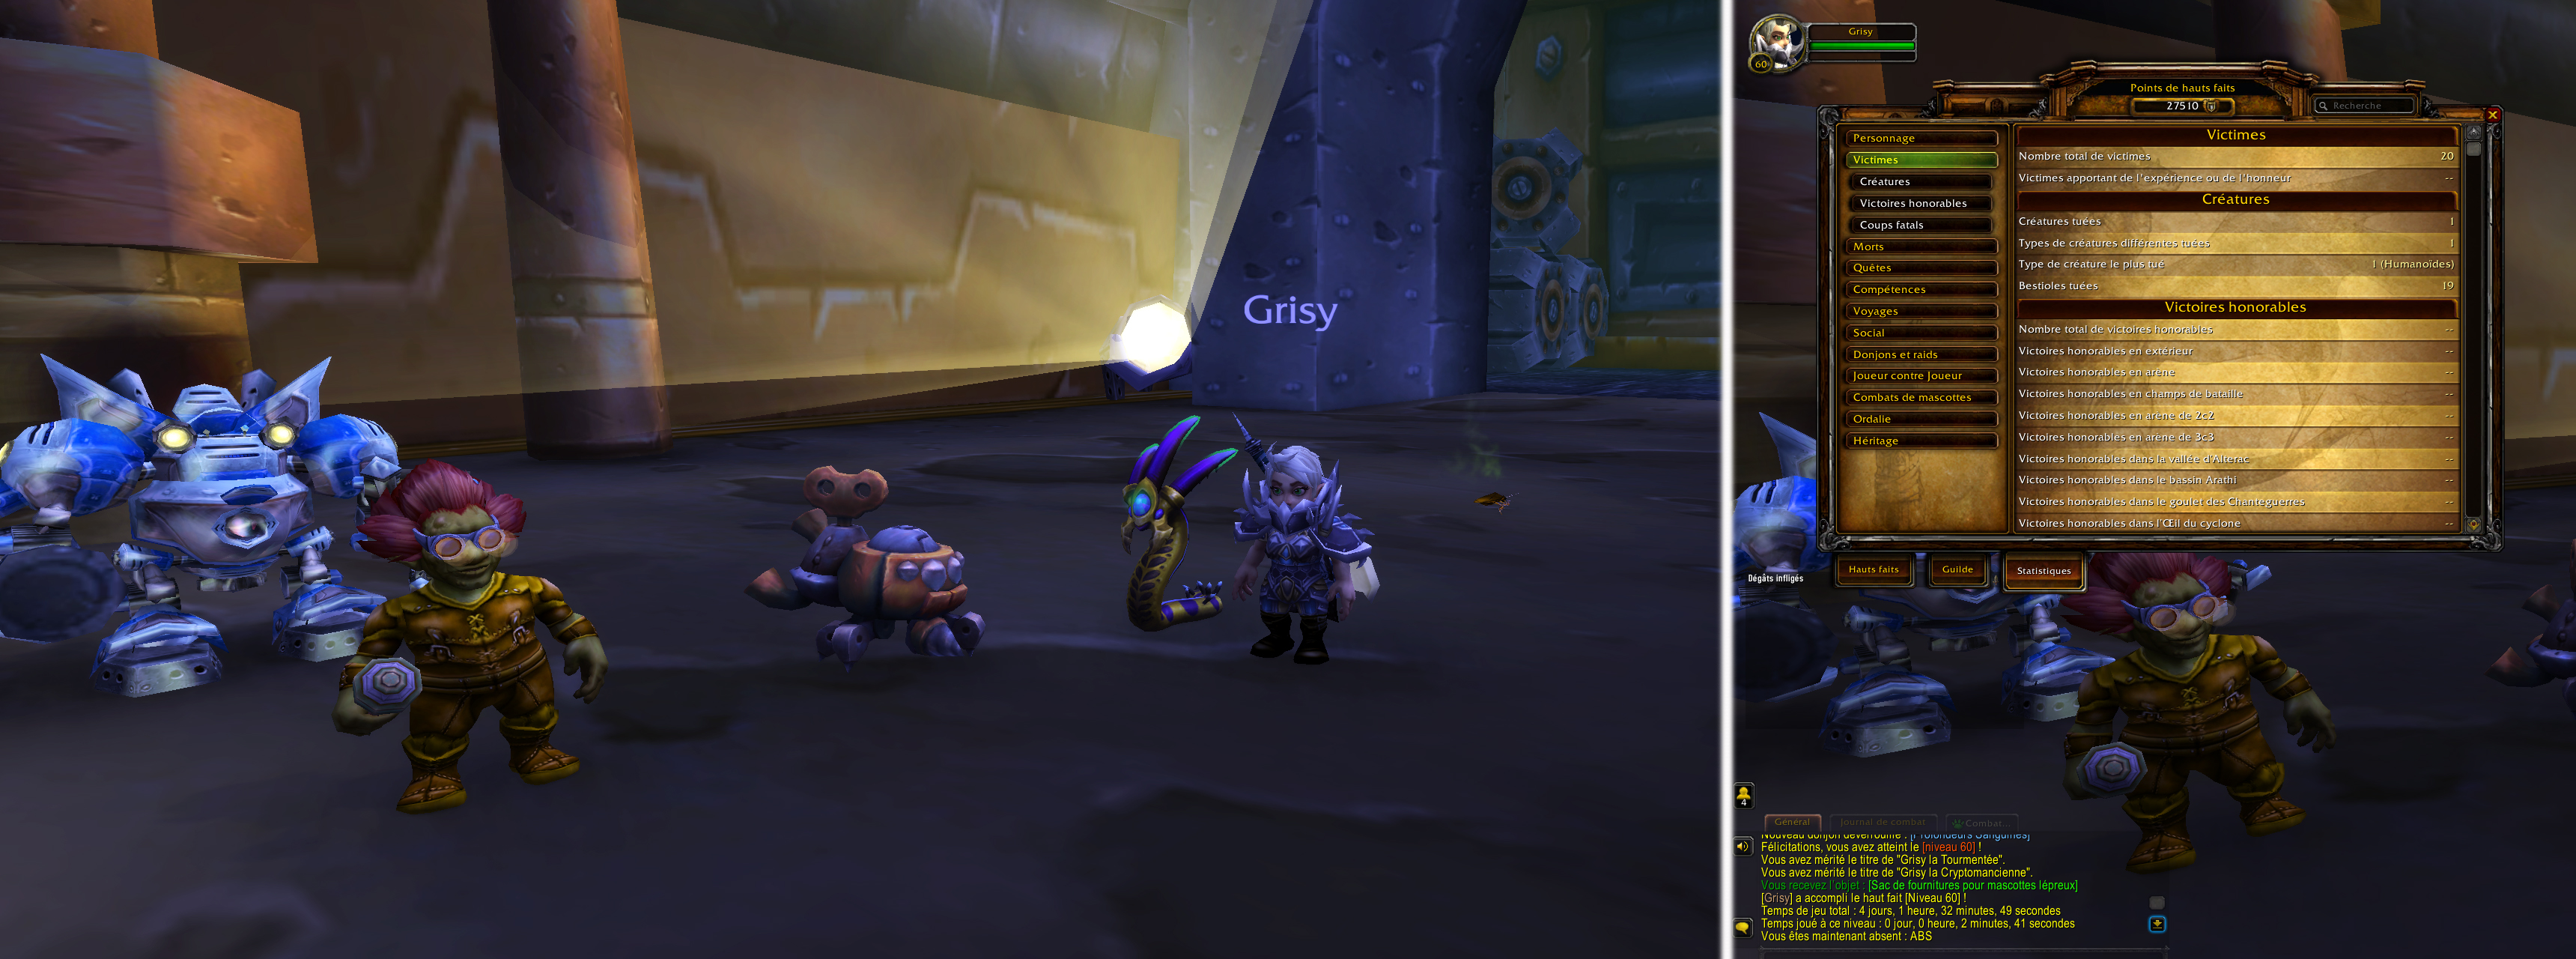 Grisy, la Gnome et le combat de mascottes